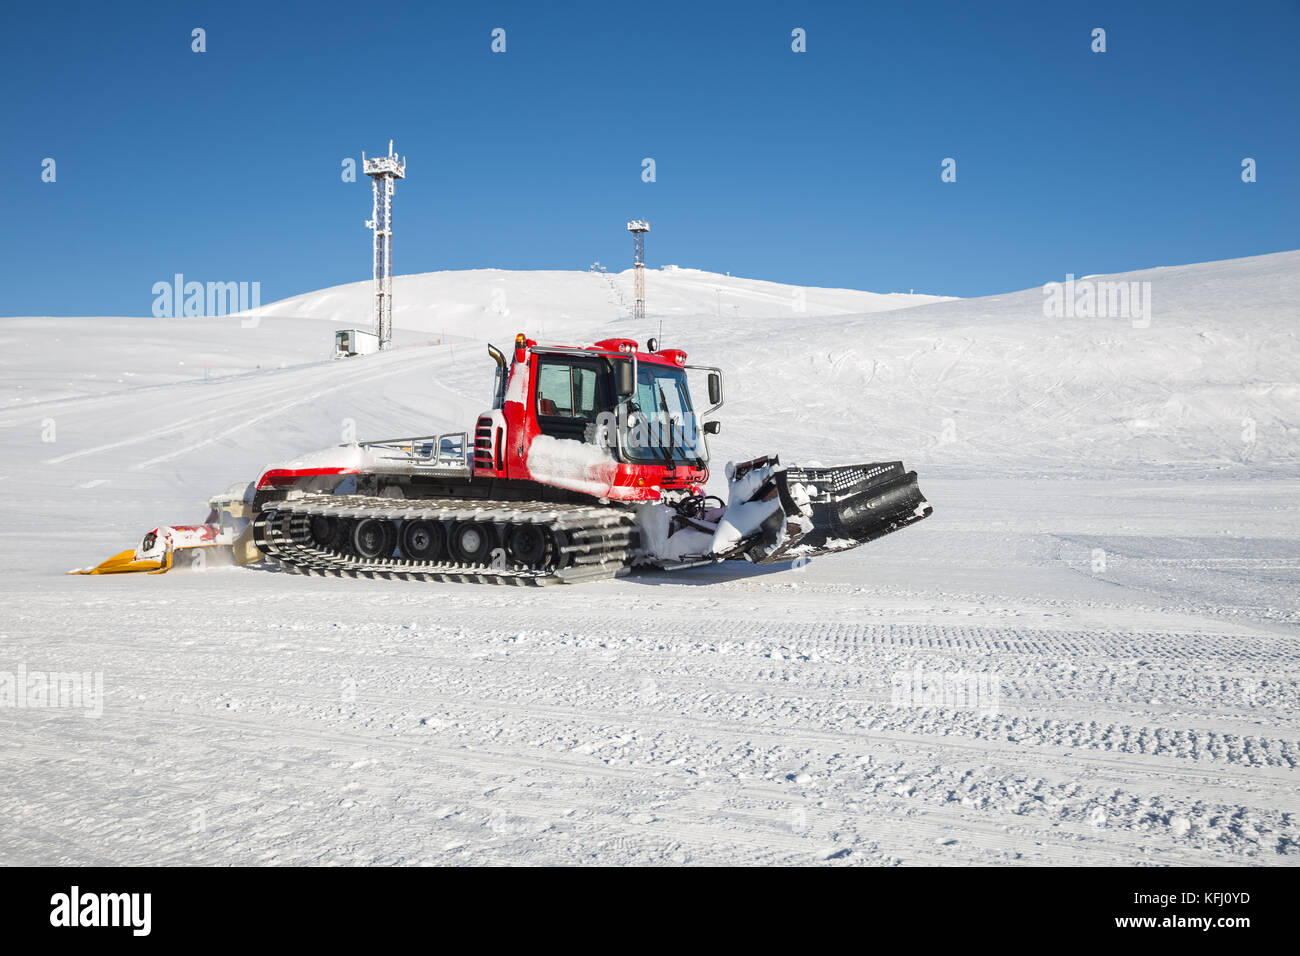 Snow groomer prepares the ski slope at a ski resort in the Khibiny Stock Photo